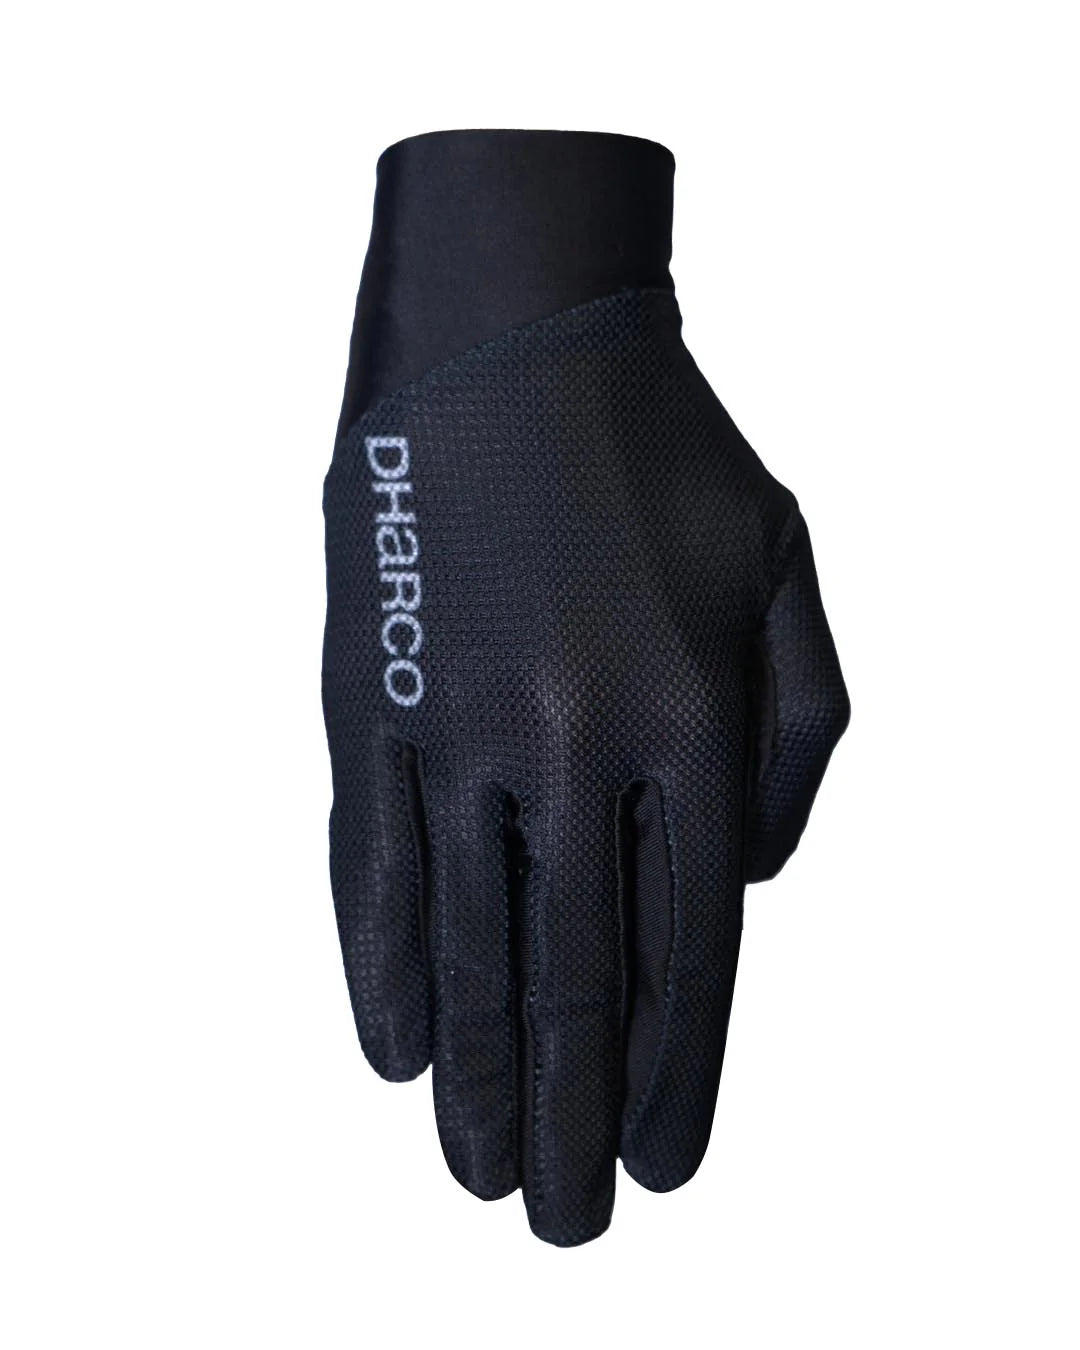 DHaRCO Womens Trail Glove